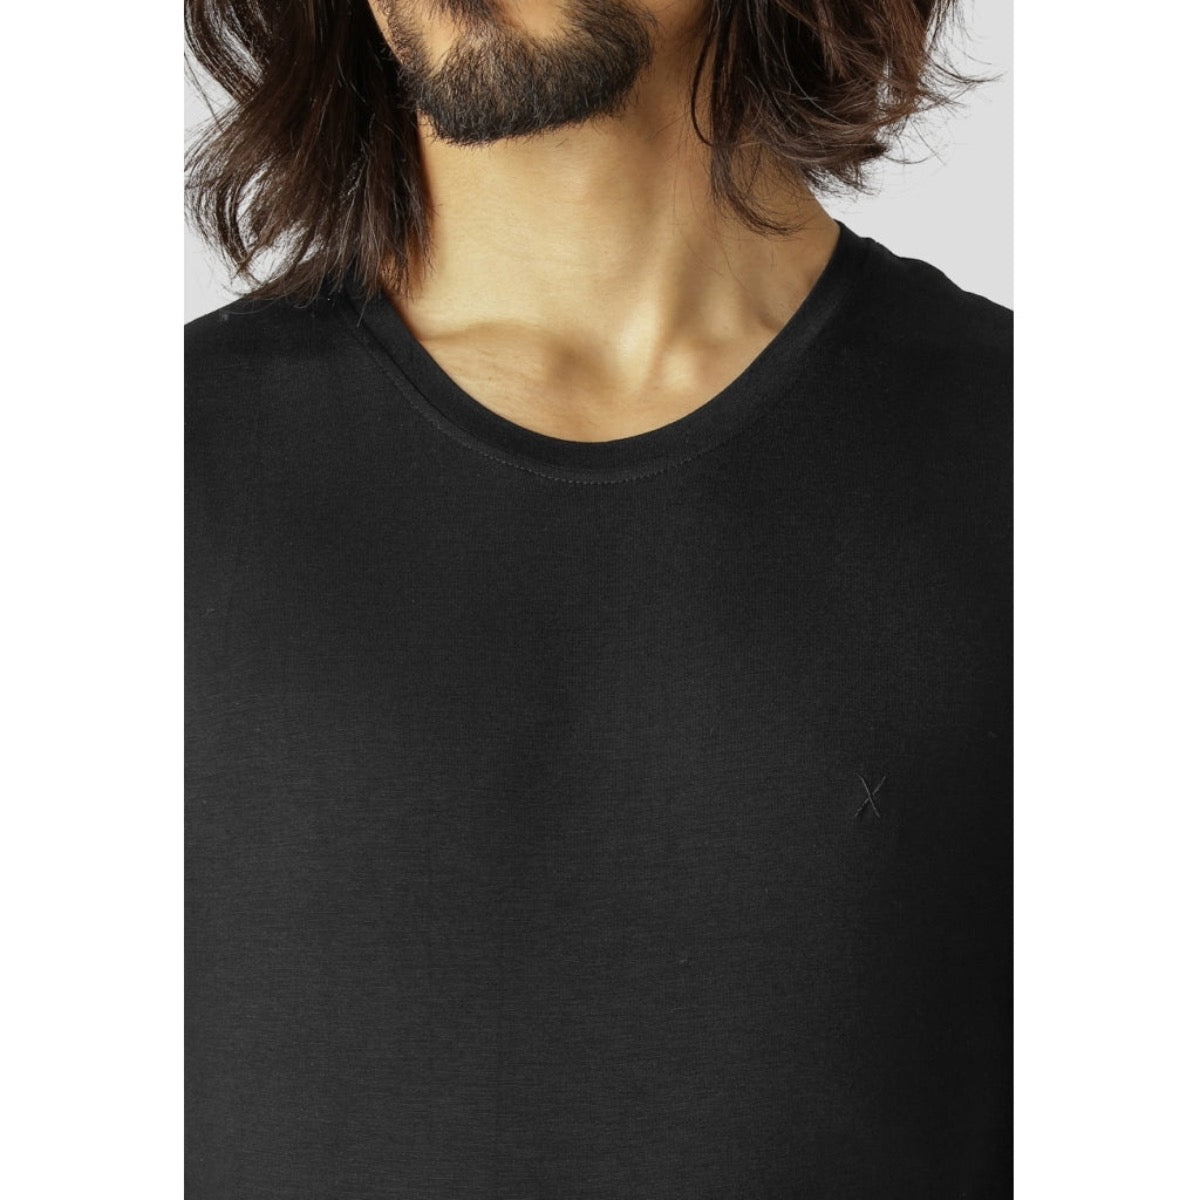 T-Shirt in Schwarz von Clean Cut Copenhagen aus Bambus.